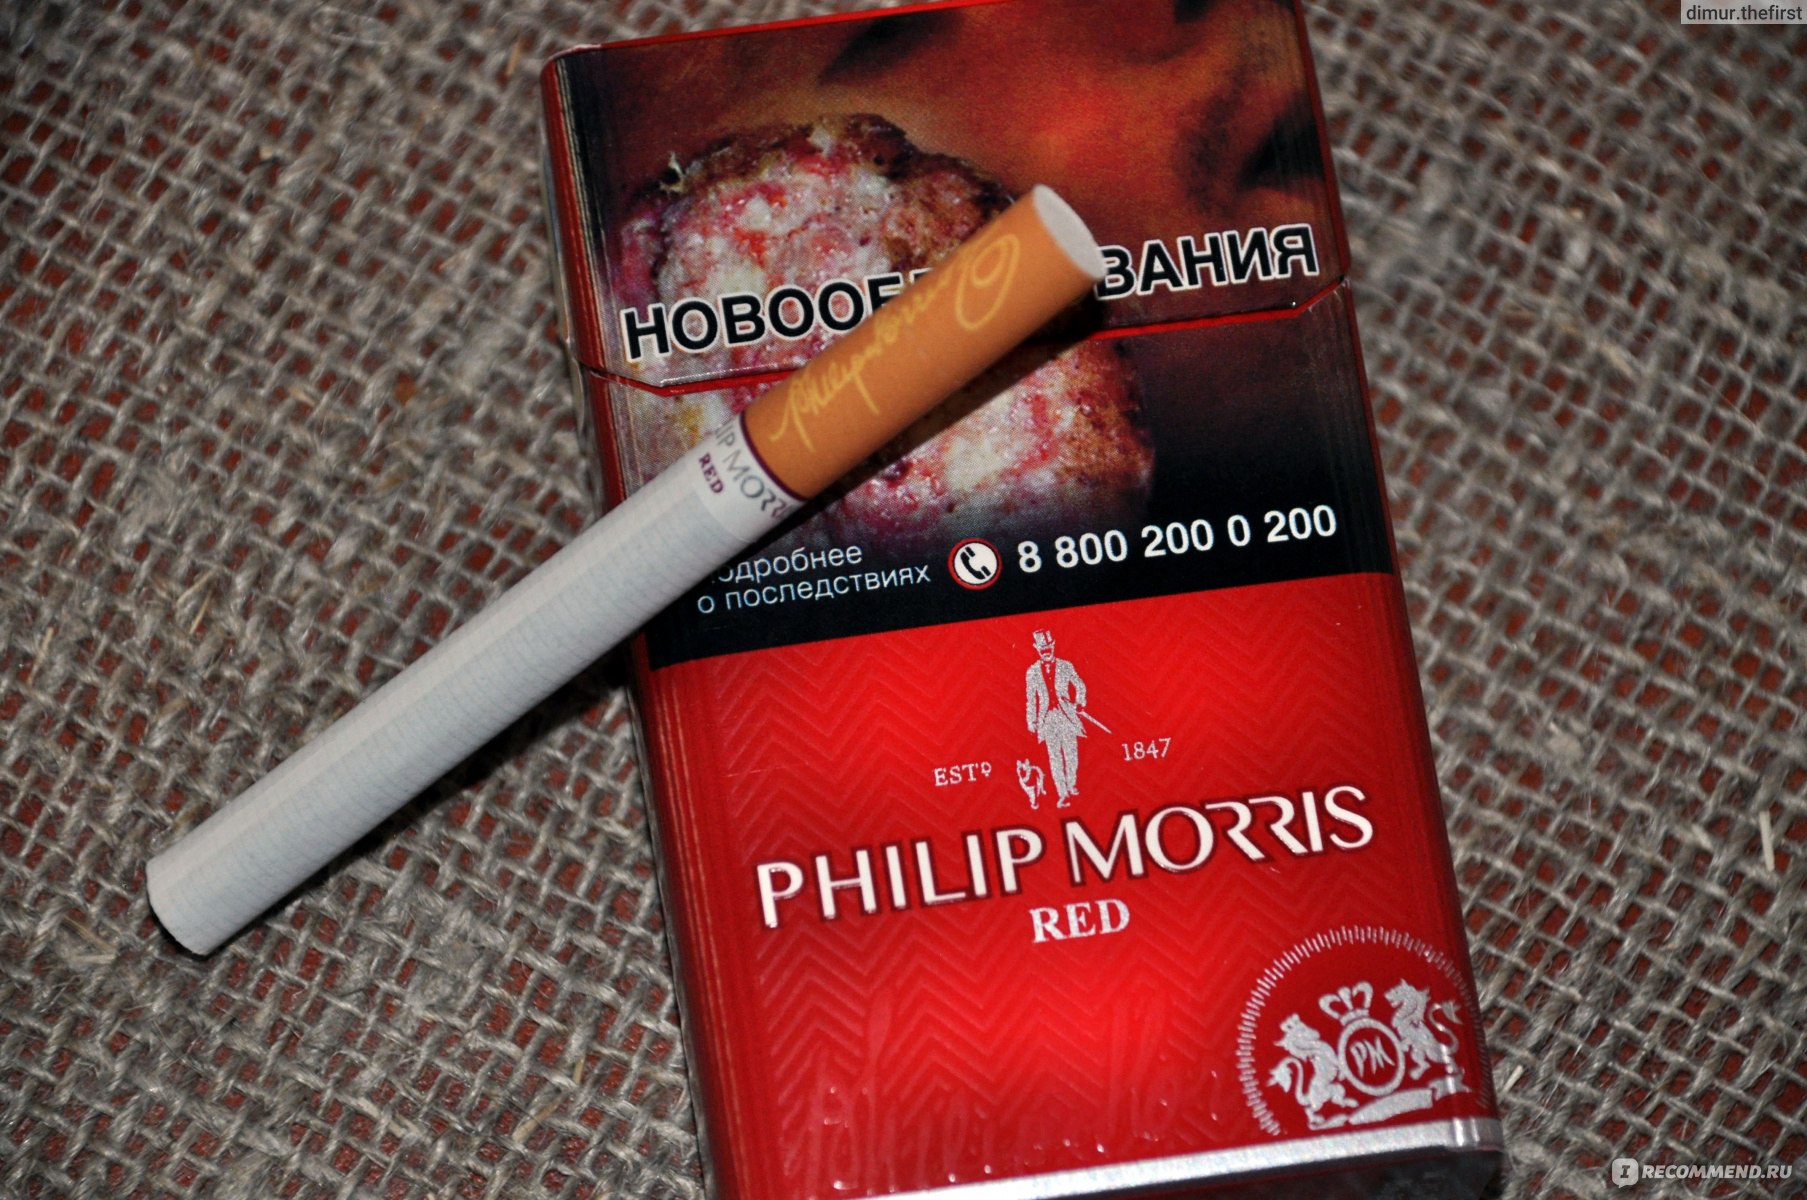 Филлип моррис отзывы. Сигареты Филип Моррис красный. Сигареты красни флип Морес. Сигареты Филип Морис с красной кнопкой. Сигареты пилпморс красный.